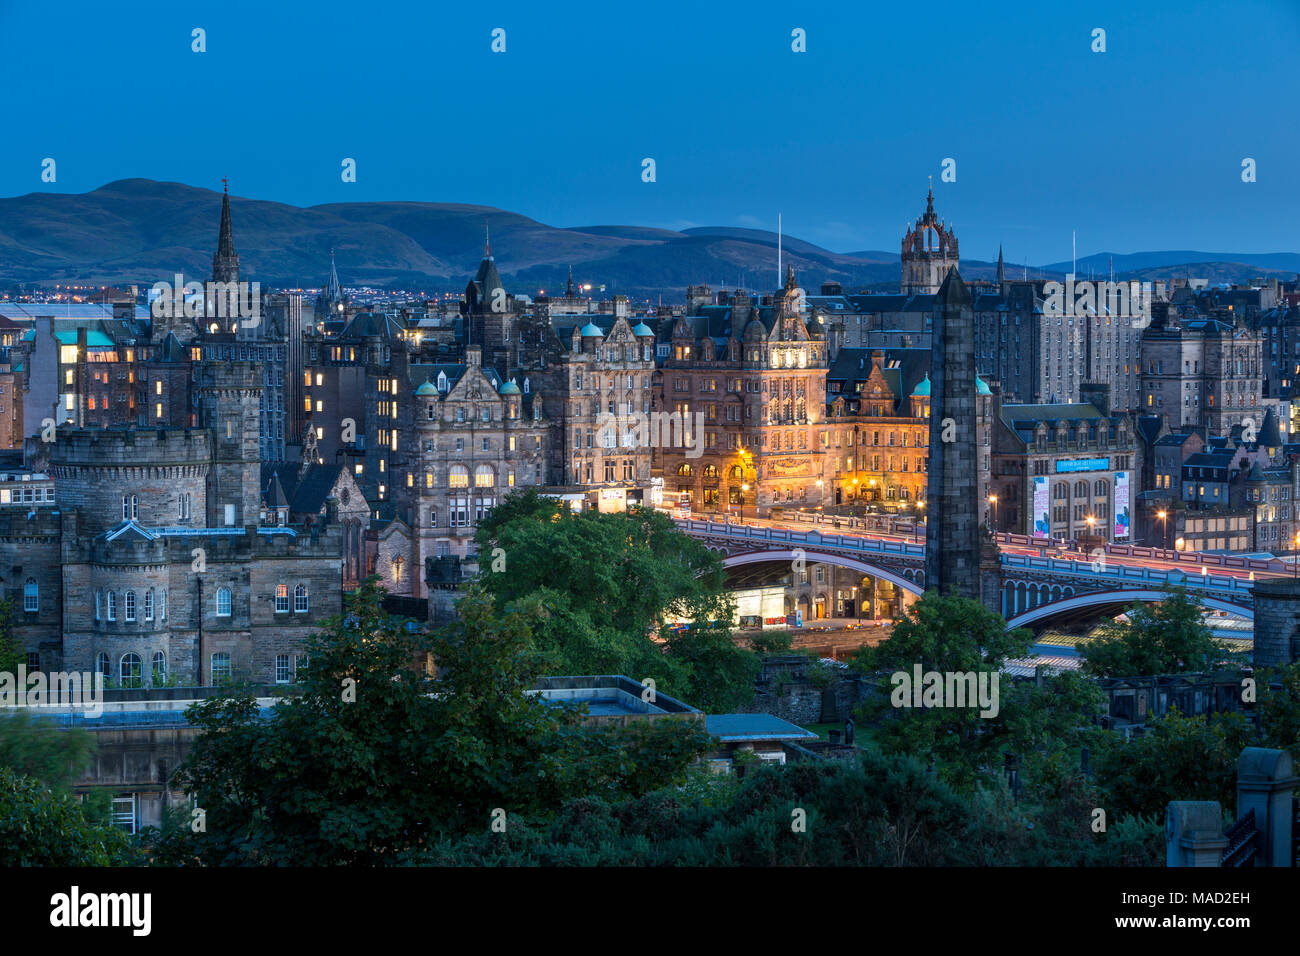 Plus de crépuscule Vieux St Andrew's House et les bâtiments d'Édimbourg, Écosse, Royaume-Uni Banque D'Images